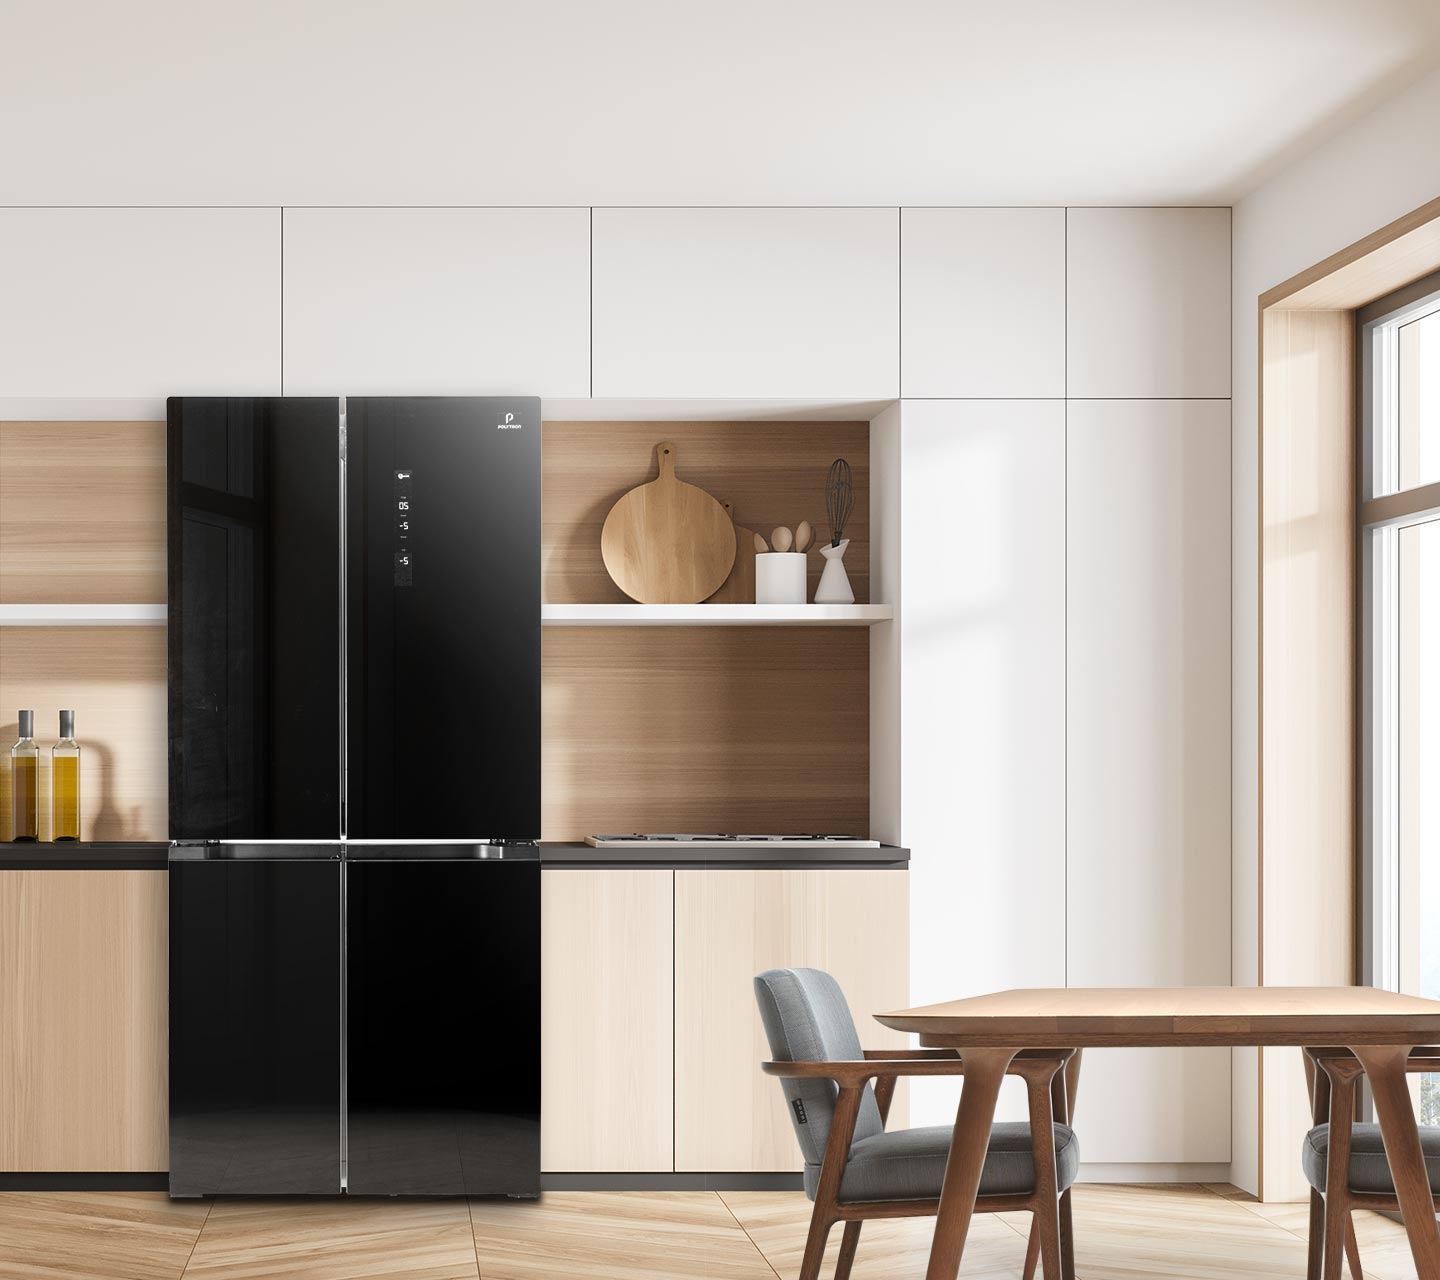 kulkas side by side elegant untuk menghiasi interior dapur rumah